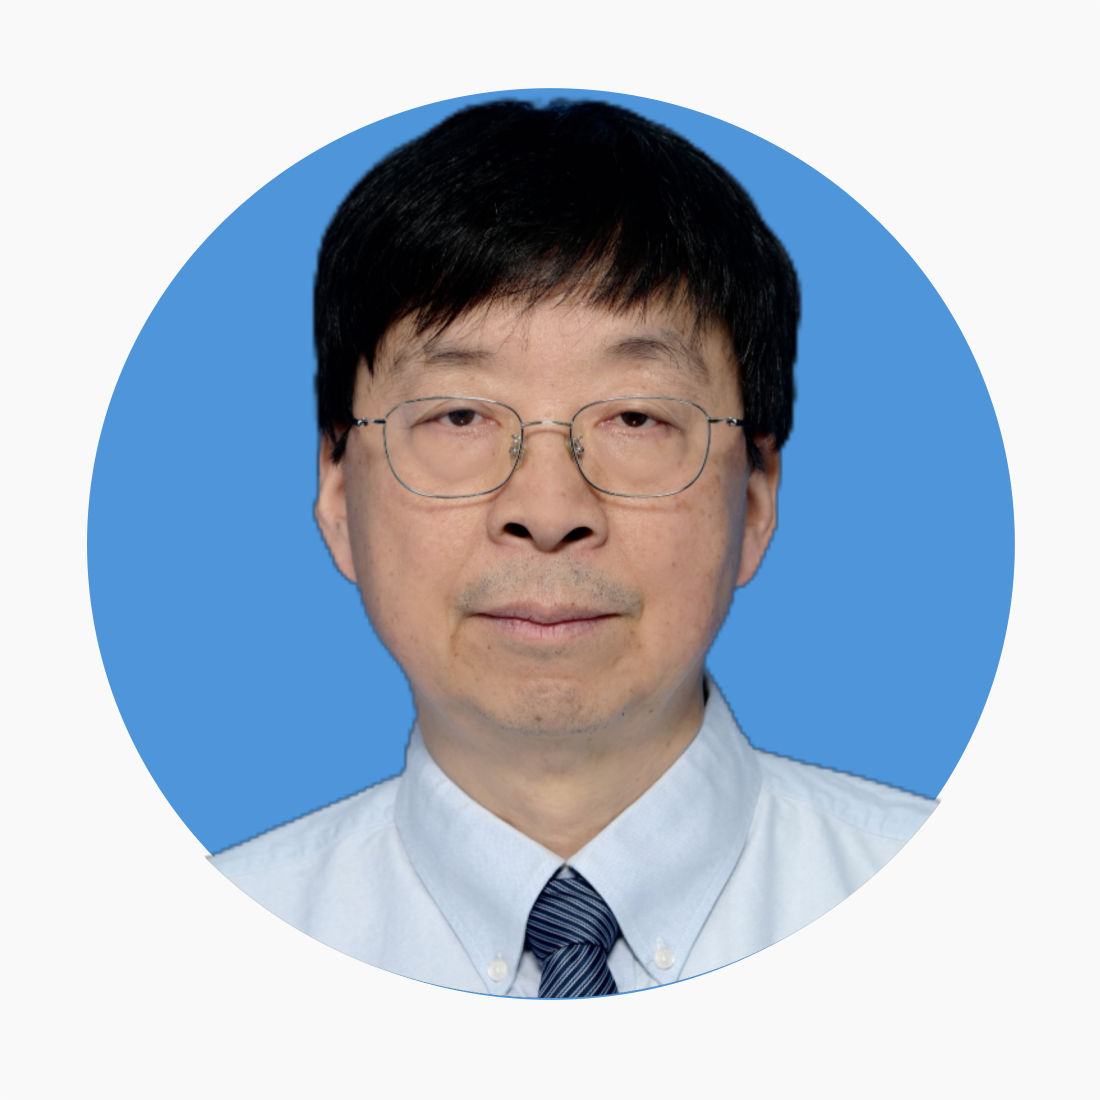 Prof. Guang Zhu